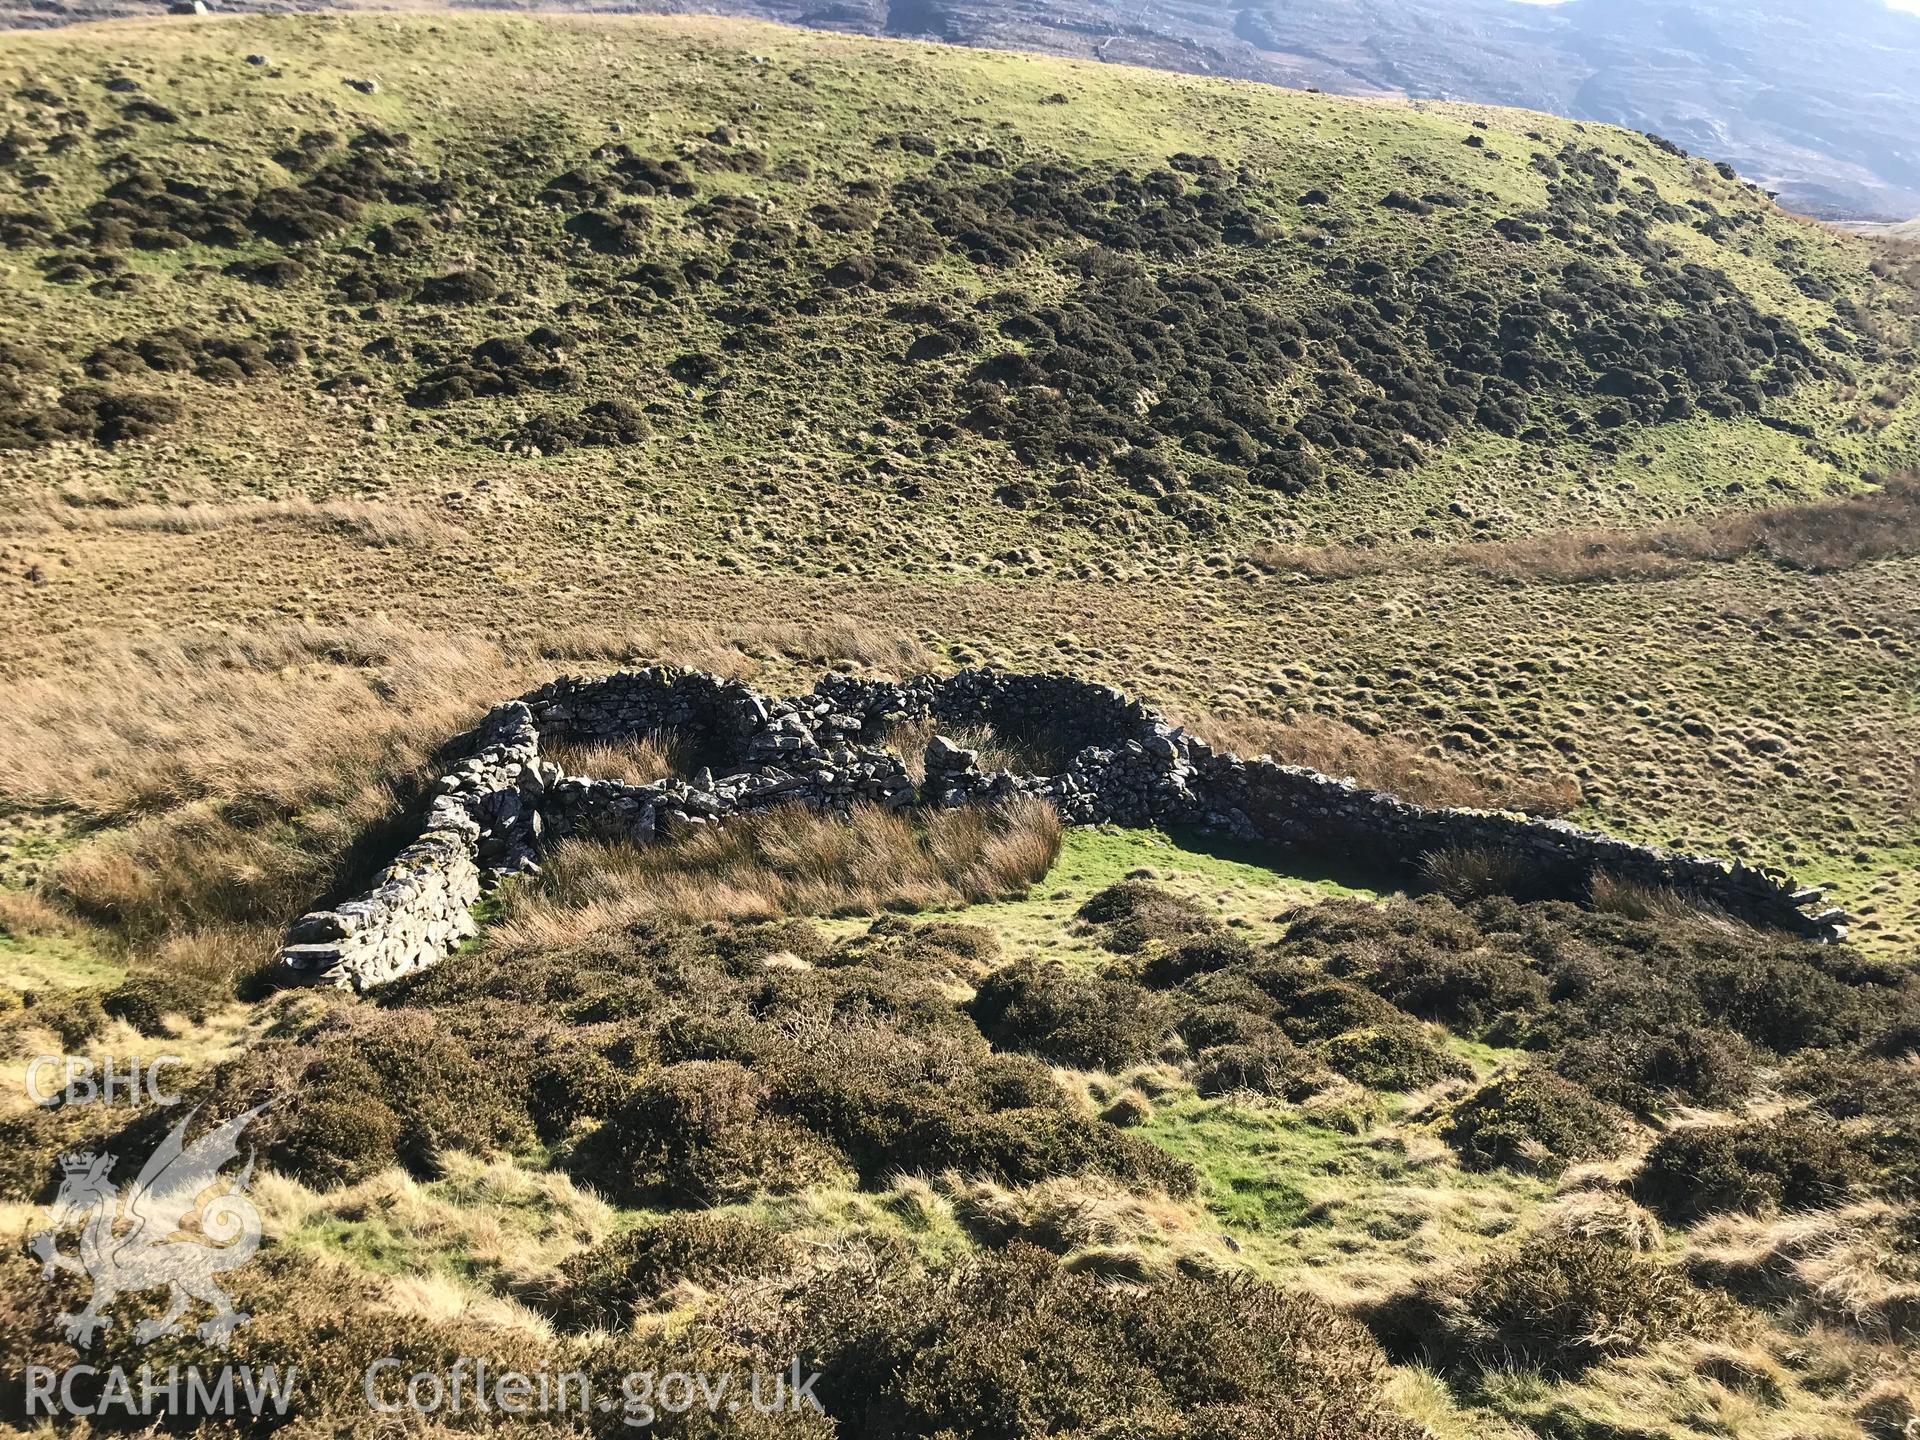 Digital colour photograph of sheepfold or building south east of Llyn Caerwych, Moel-y-Geifr, Talsarnau, taken by Paul R. Davis on 15th February 2019.